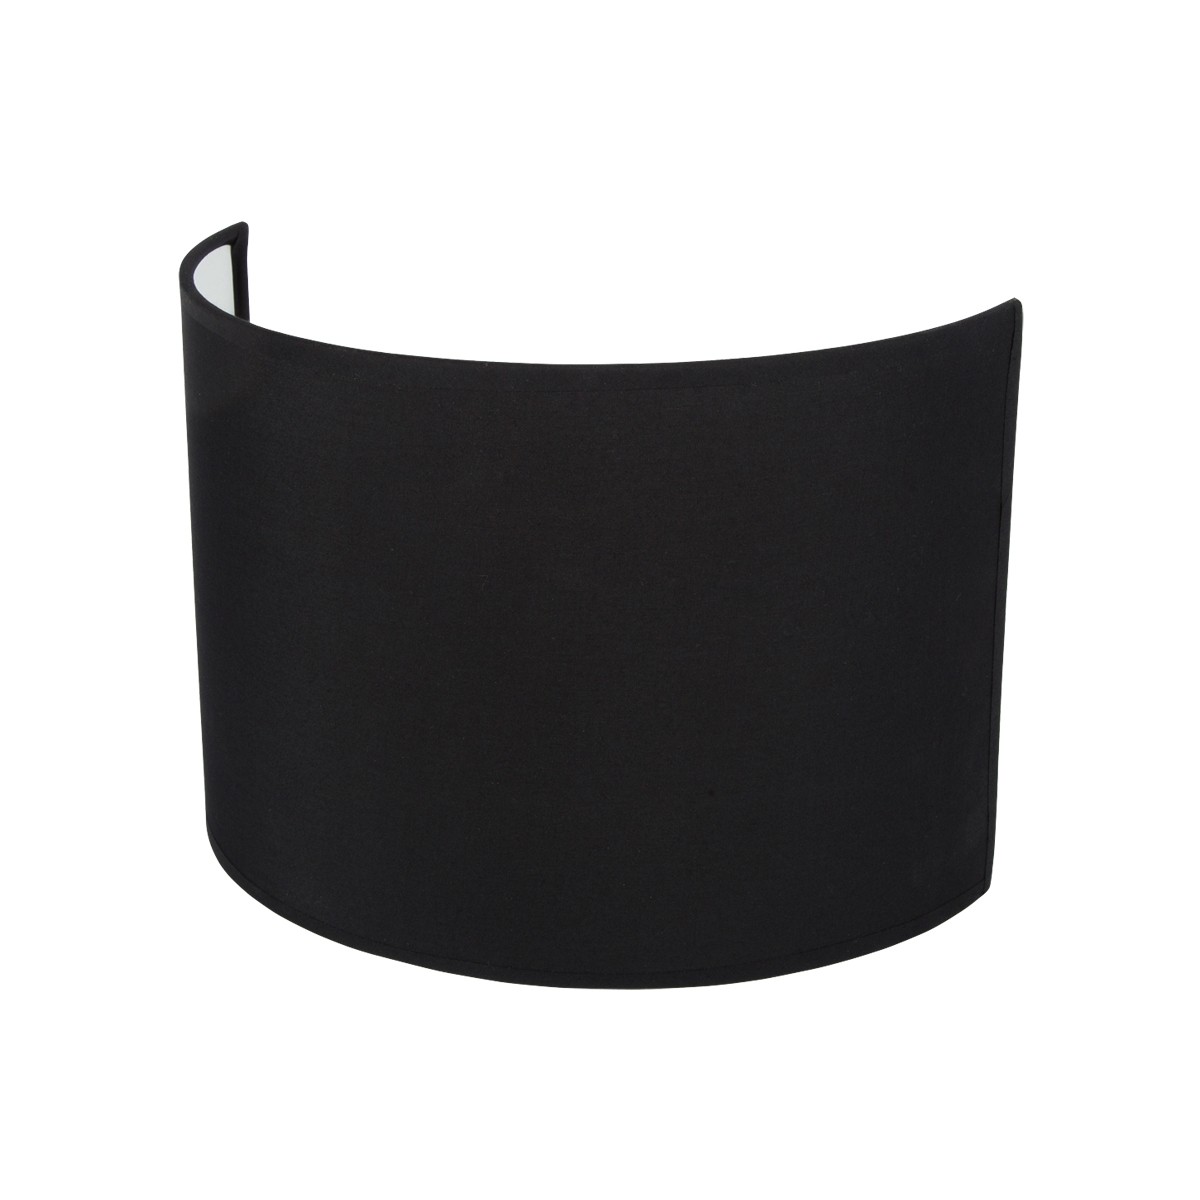 Καπέλο μονόχρωμο μισό ορθογώνιο 1 cotton 28.5cm κάτω πλευρά μαύρο VK/E27/E14/C28/B